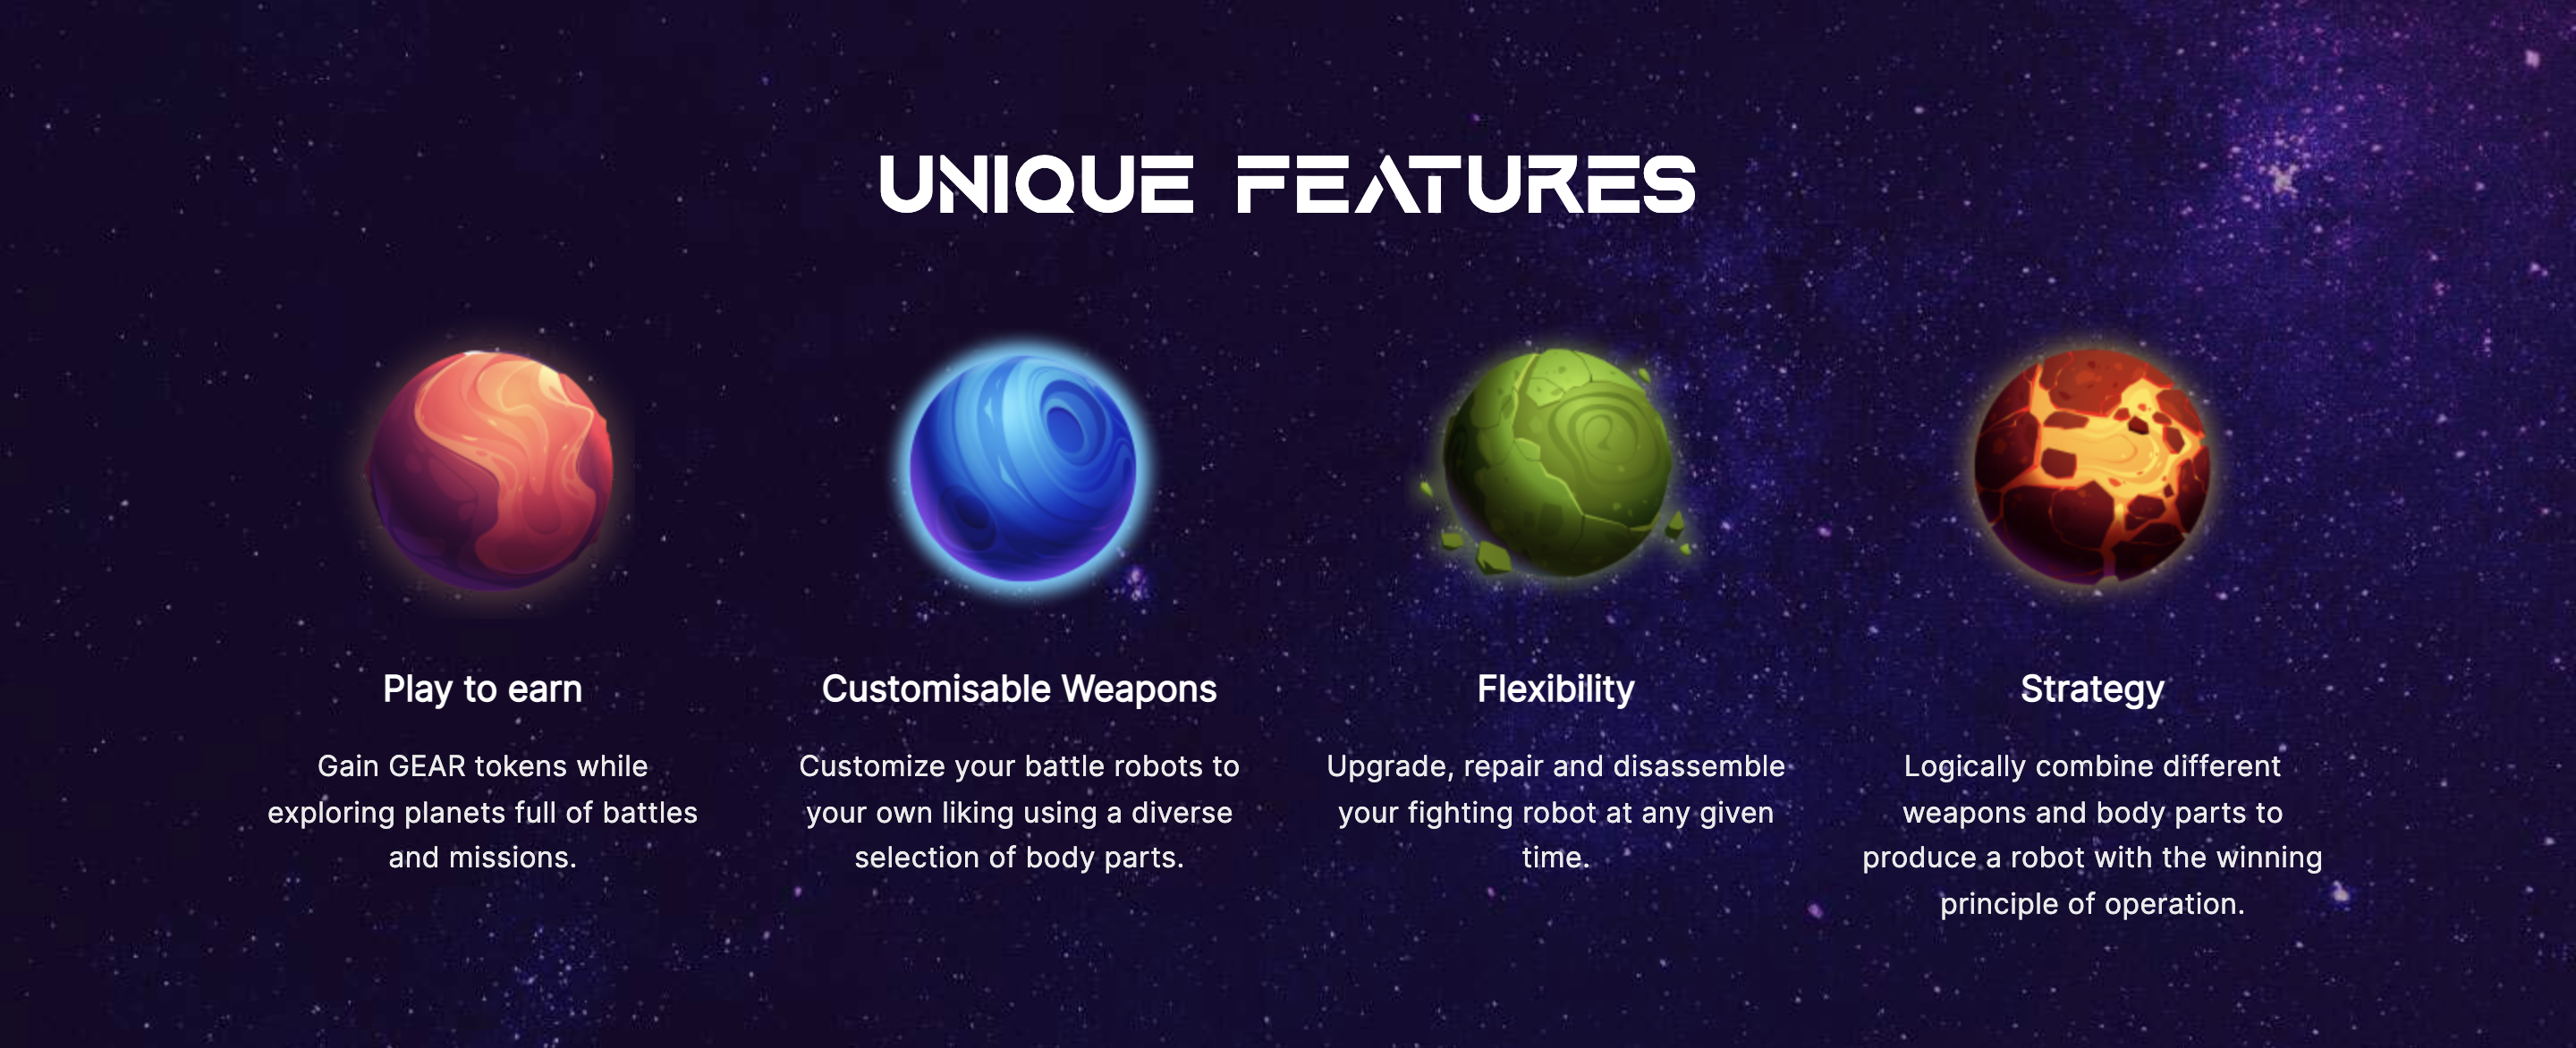 Starbots Unique Features